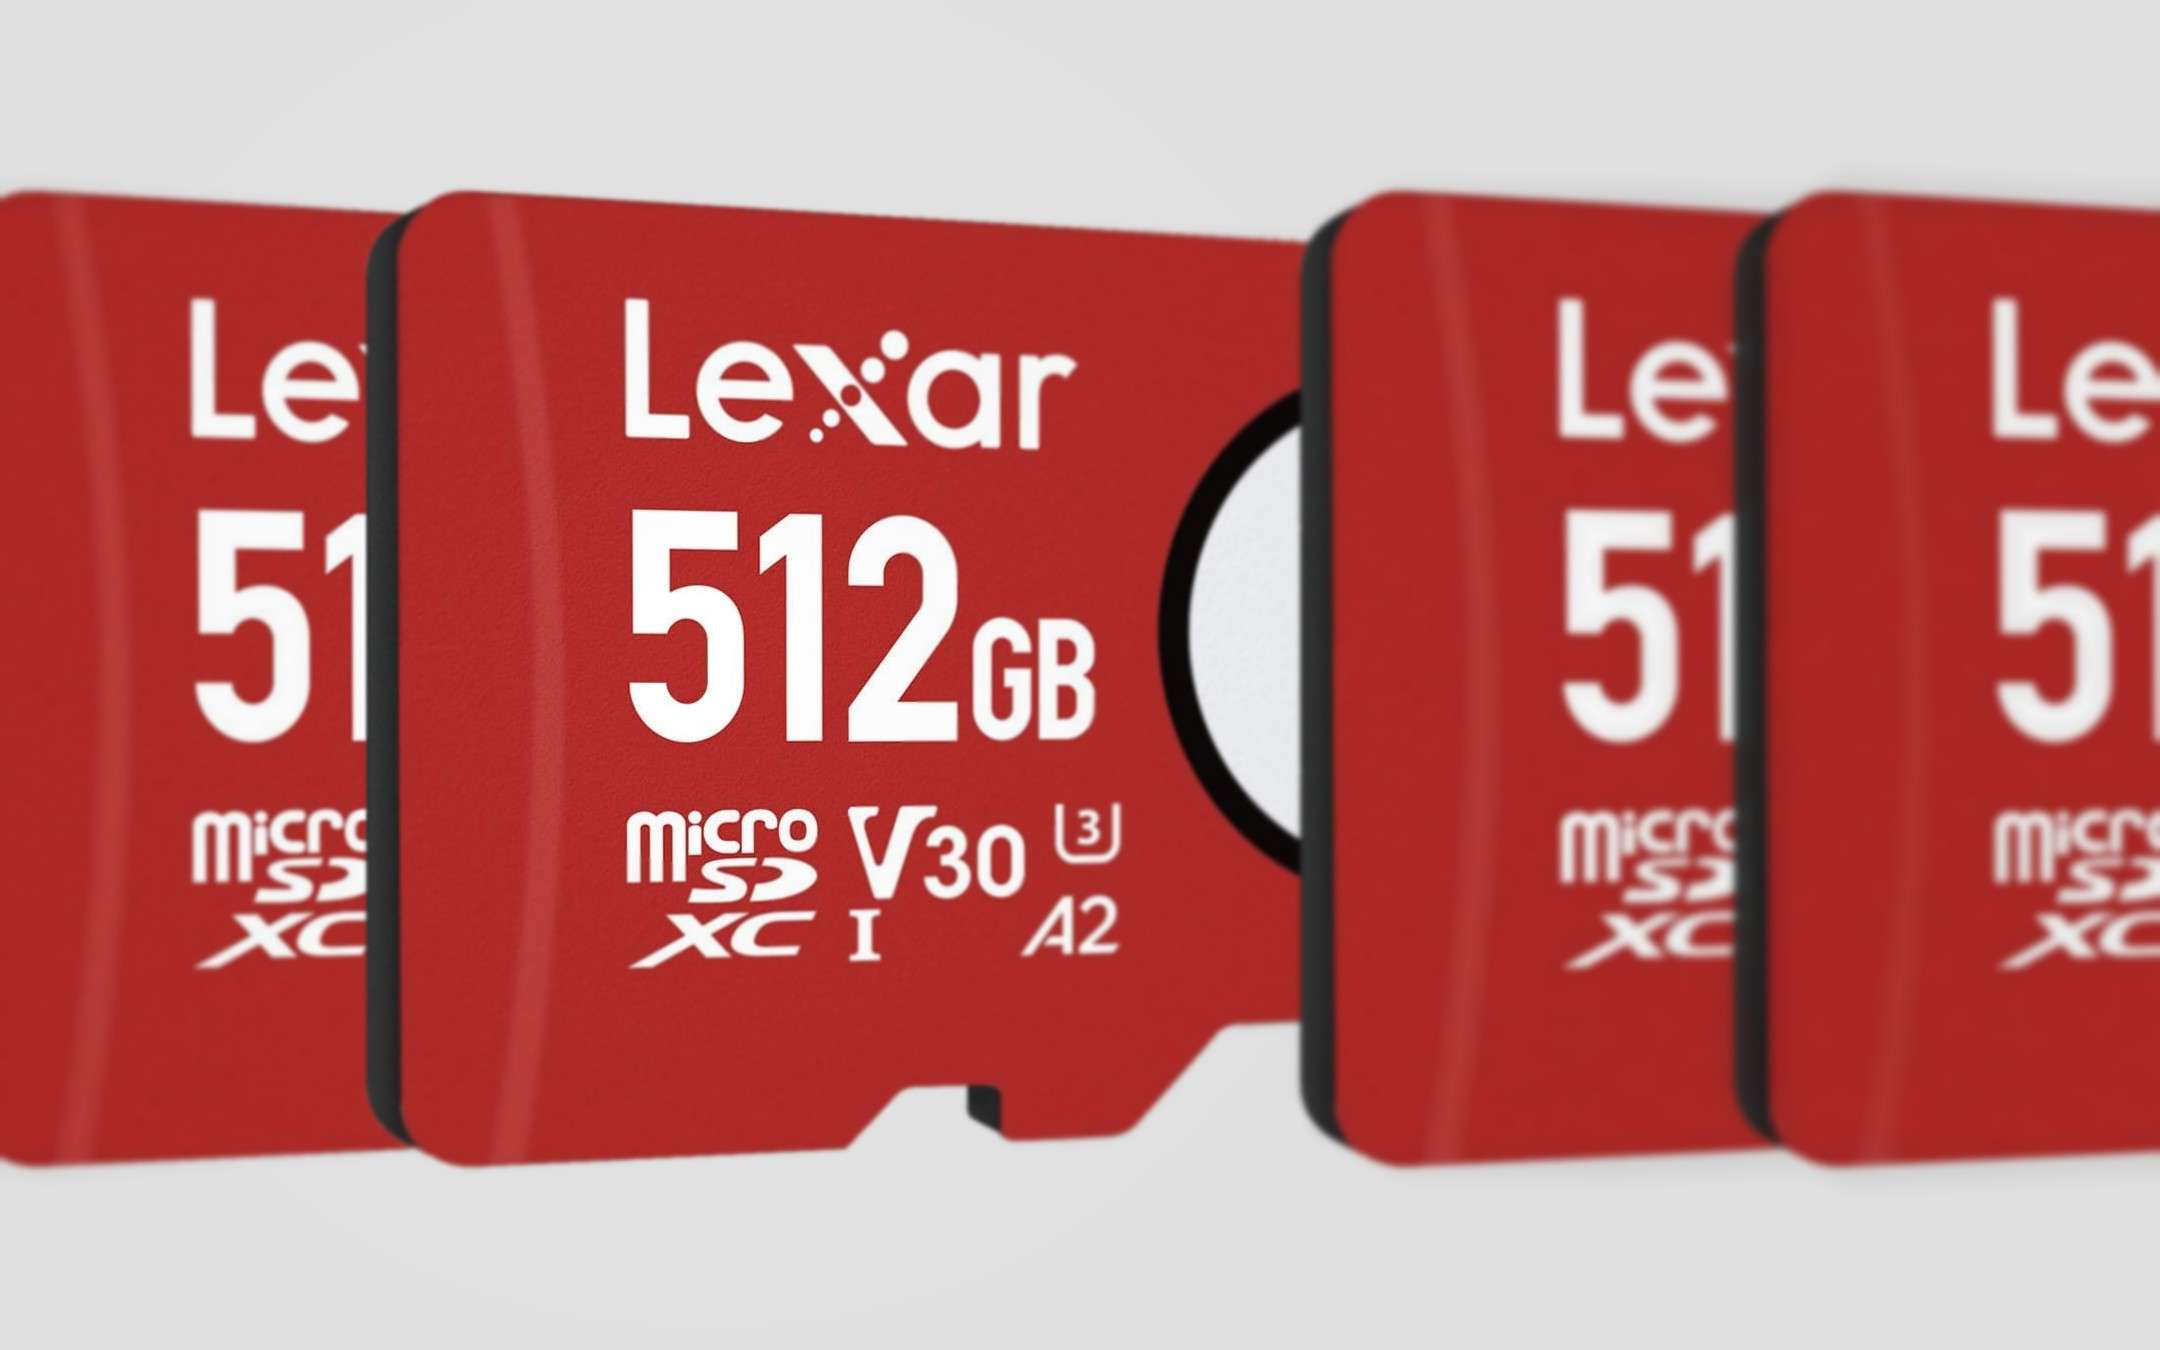 MicroSD al miglior prezzo: super occasione Lexar